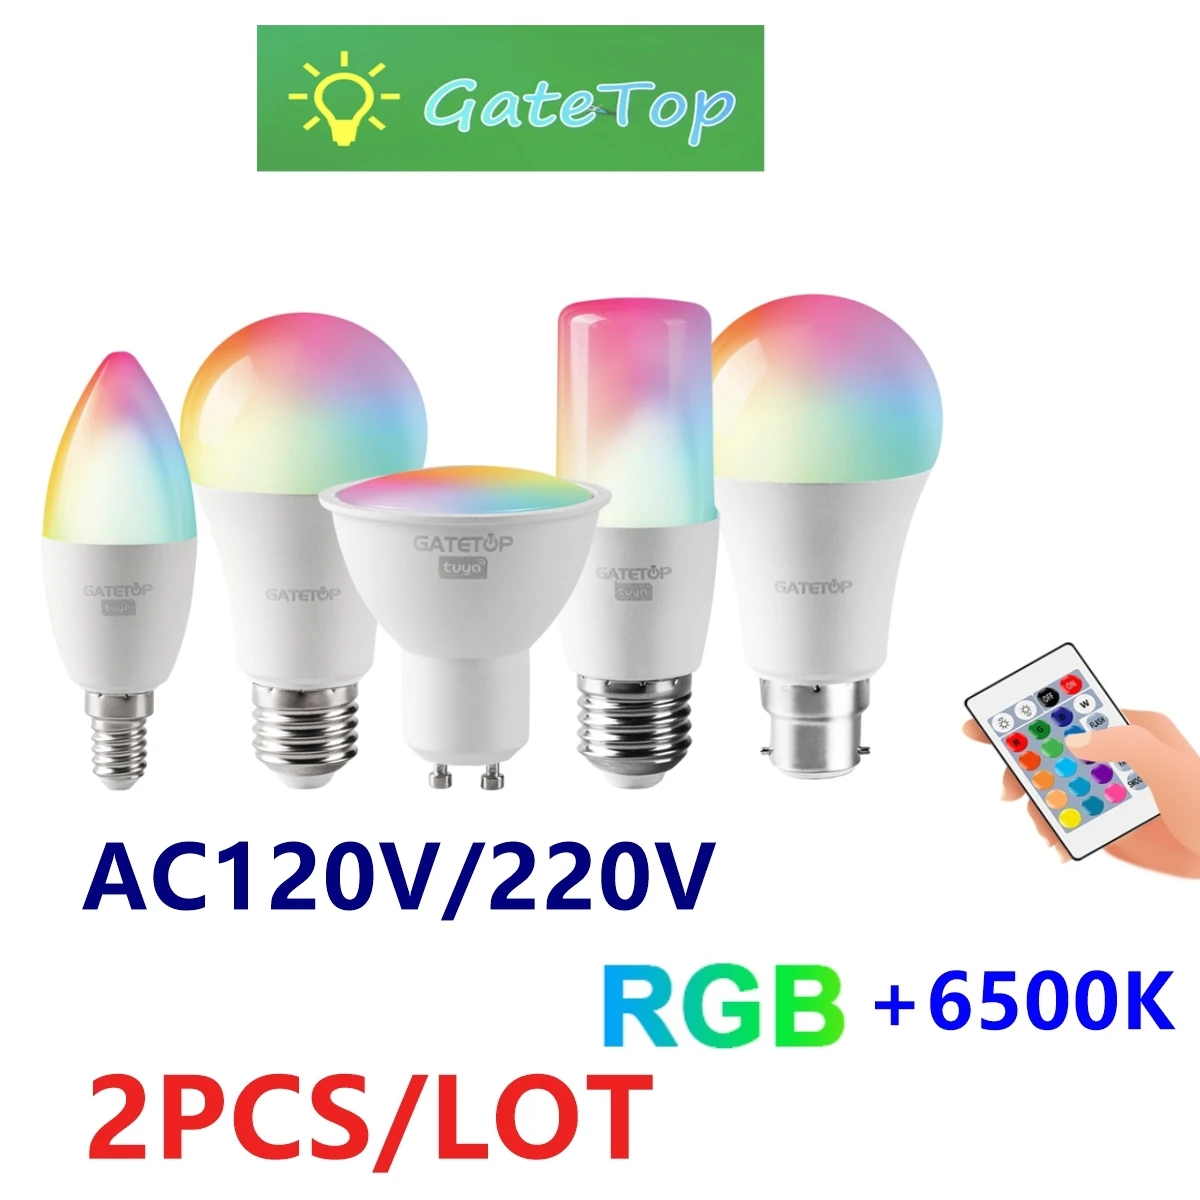 

2PCS LED RGB Lamp Spotlight Bulb E27 E14 GU10 AC120V 220V Bombillas LED 6W 10W IR Remote Control Led Smart RGBW Lamp Home Decor